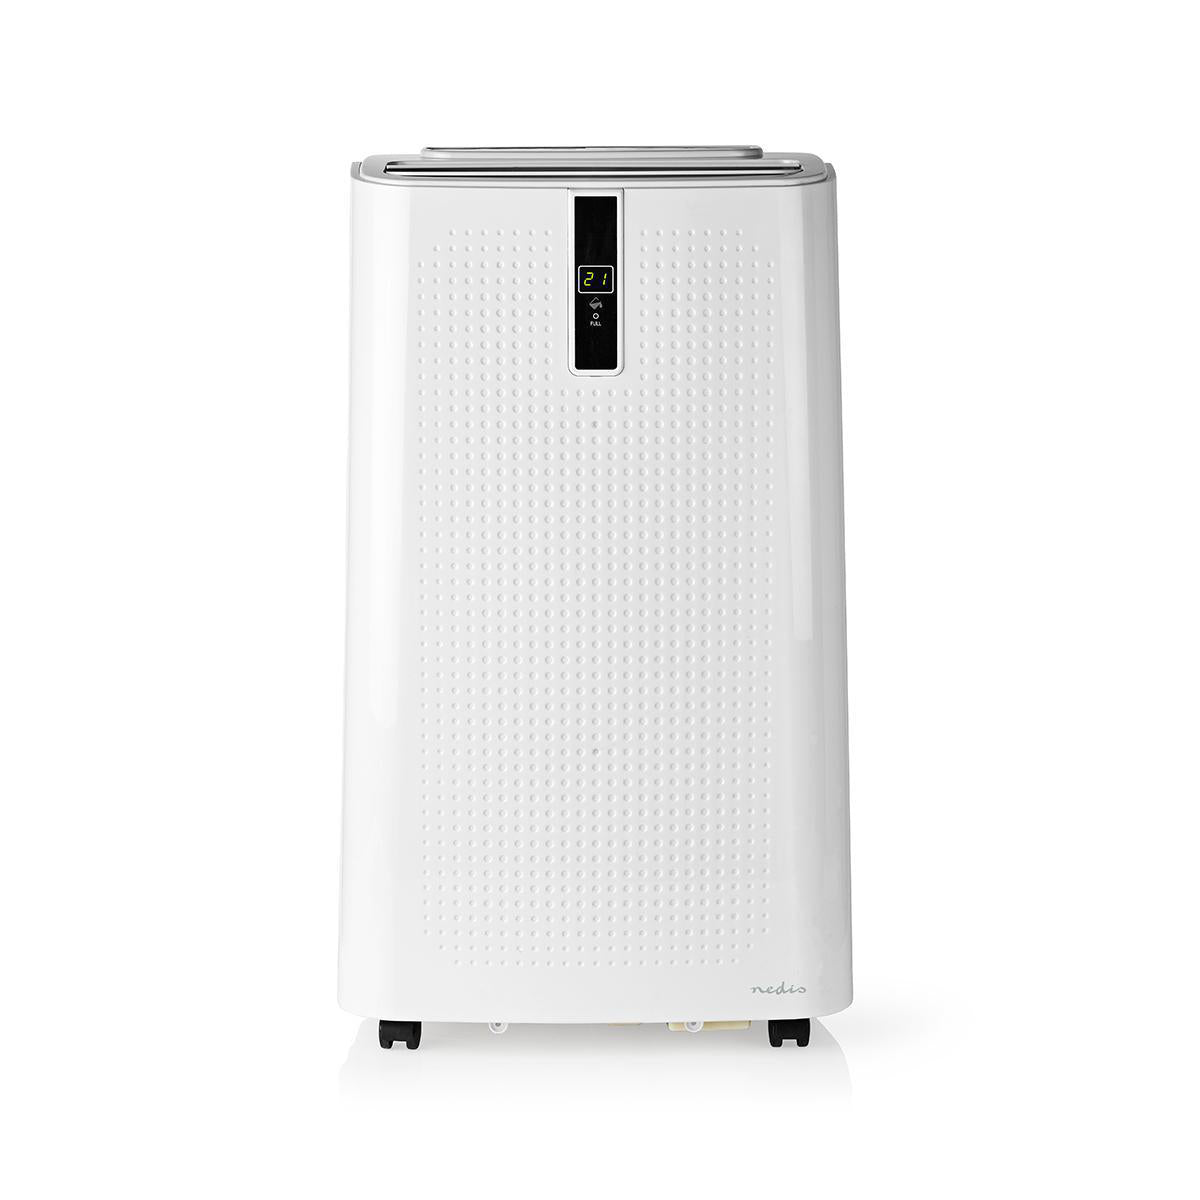 Nedis Ar Condicionado Inteligente 3 em 1 com capacidade de refrigeração de 9000 BTU